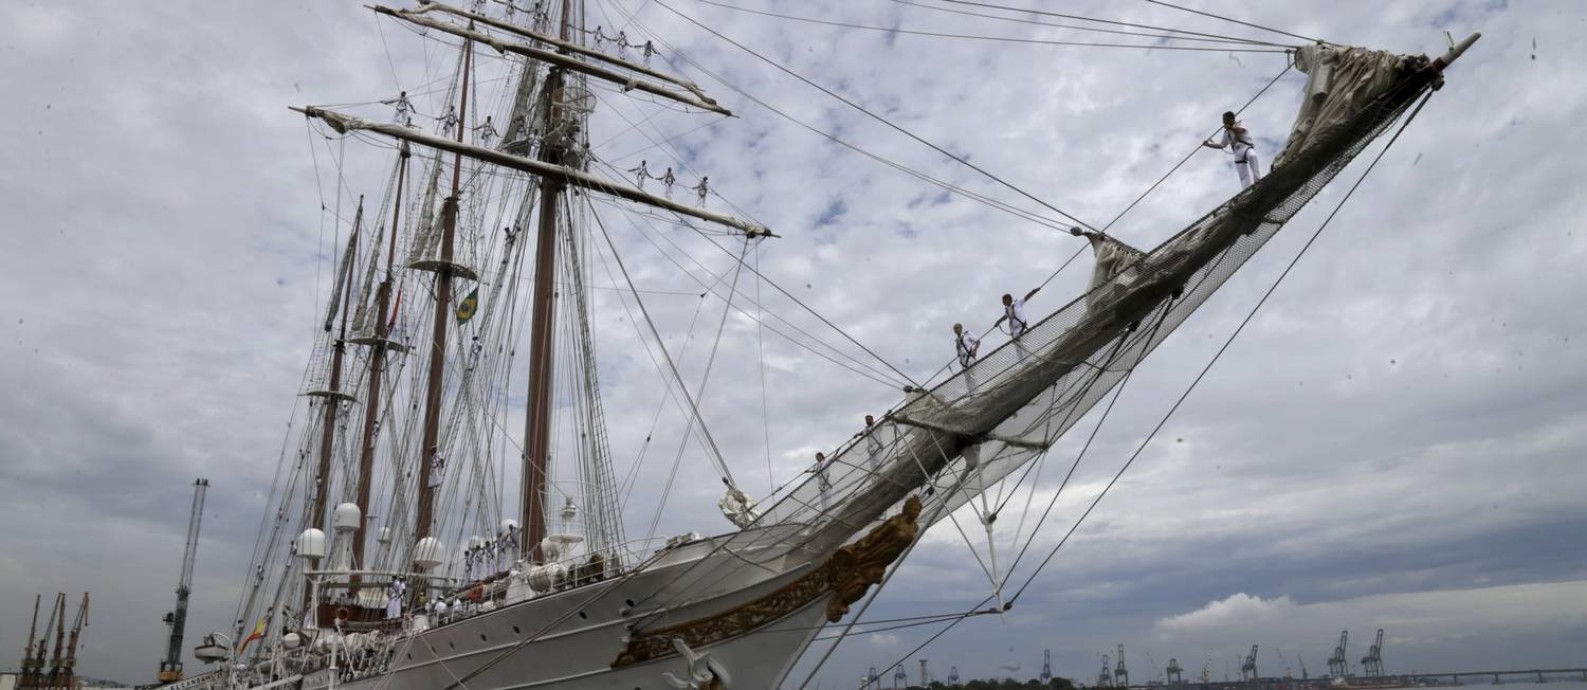 Chegada do Barco "Elcano", em atividade desde 1927, para celebrar 500 anos da primeira volta ao mundo Foto: Custódio Coimbra / Agência O Globo